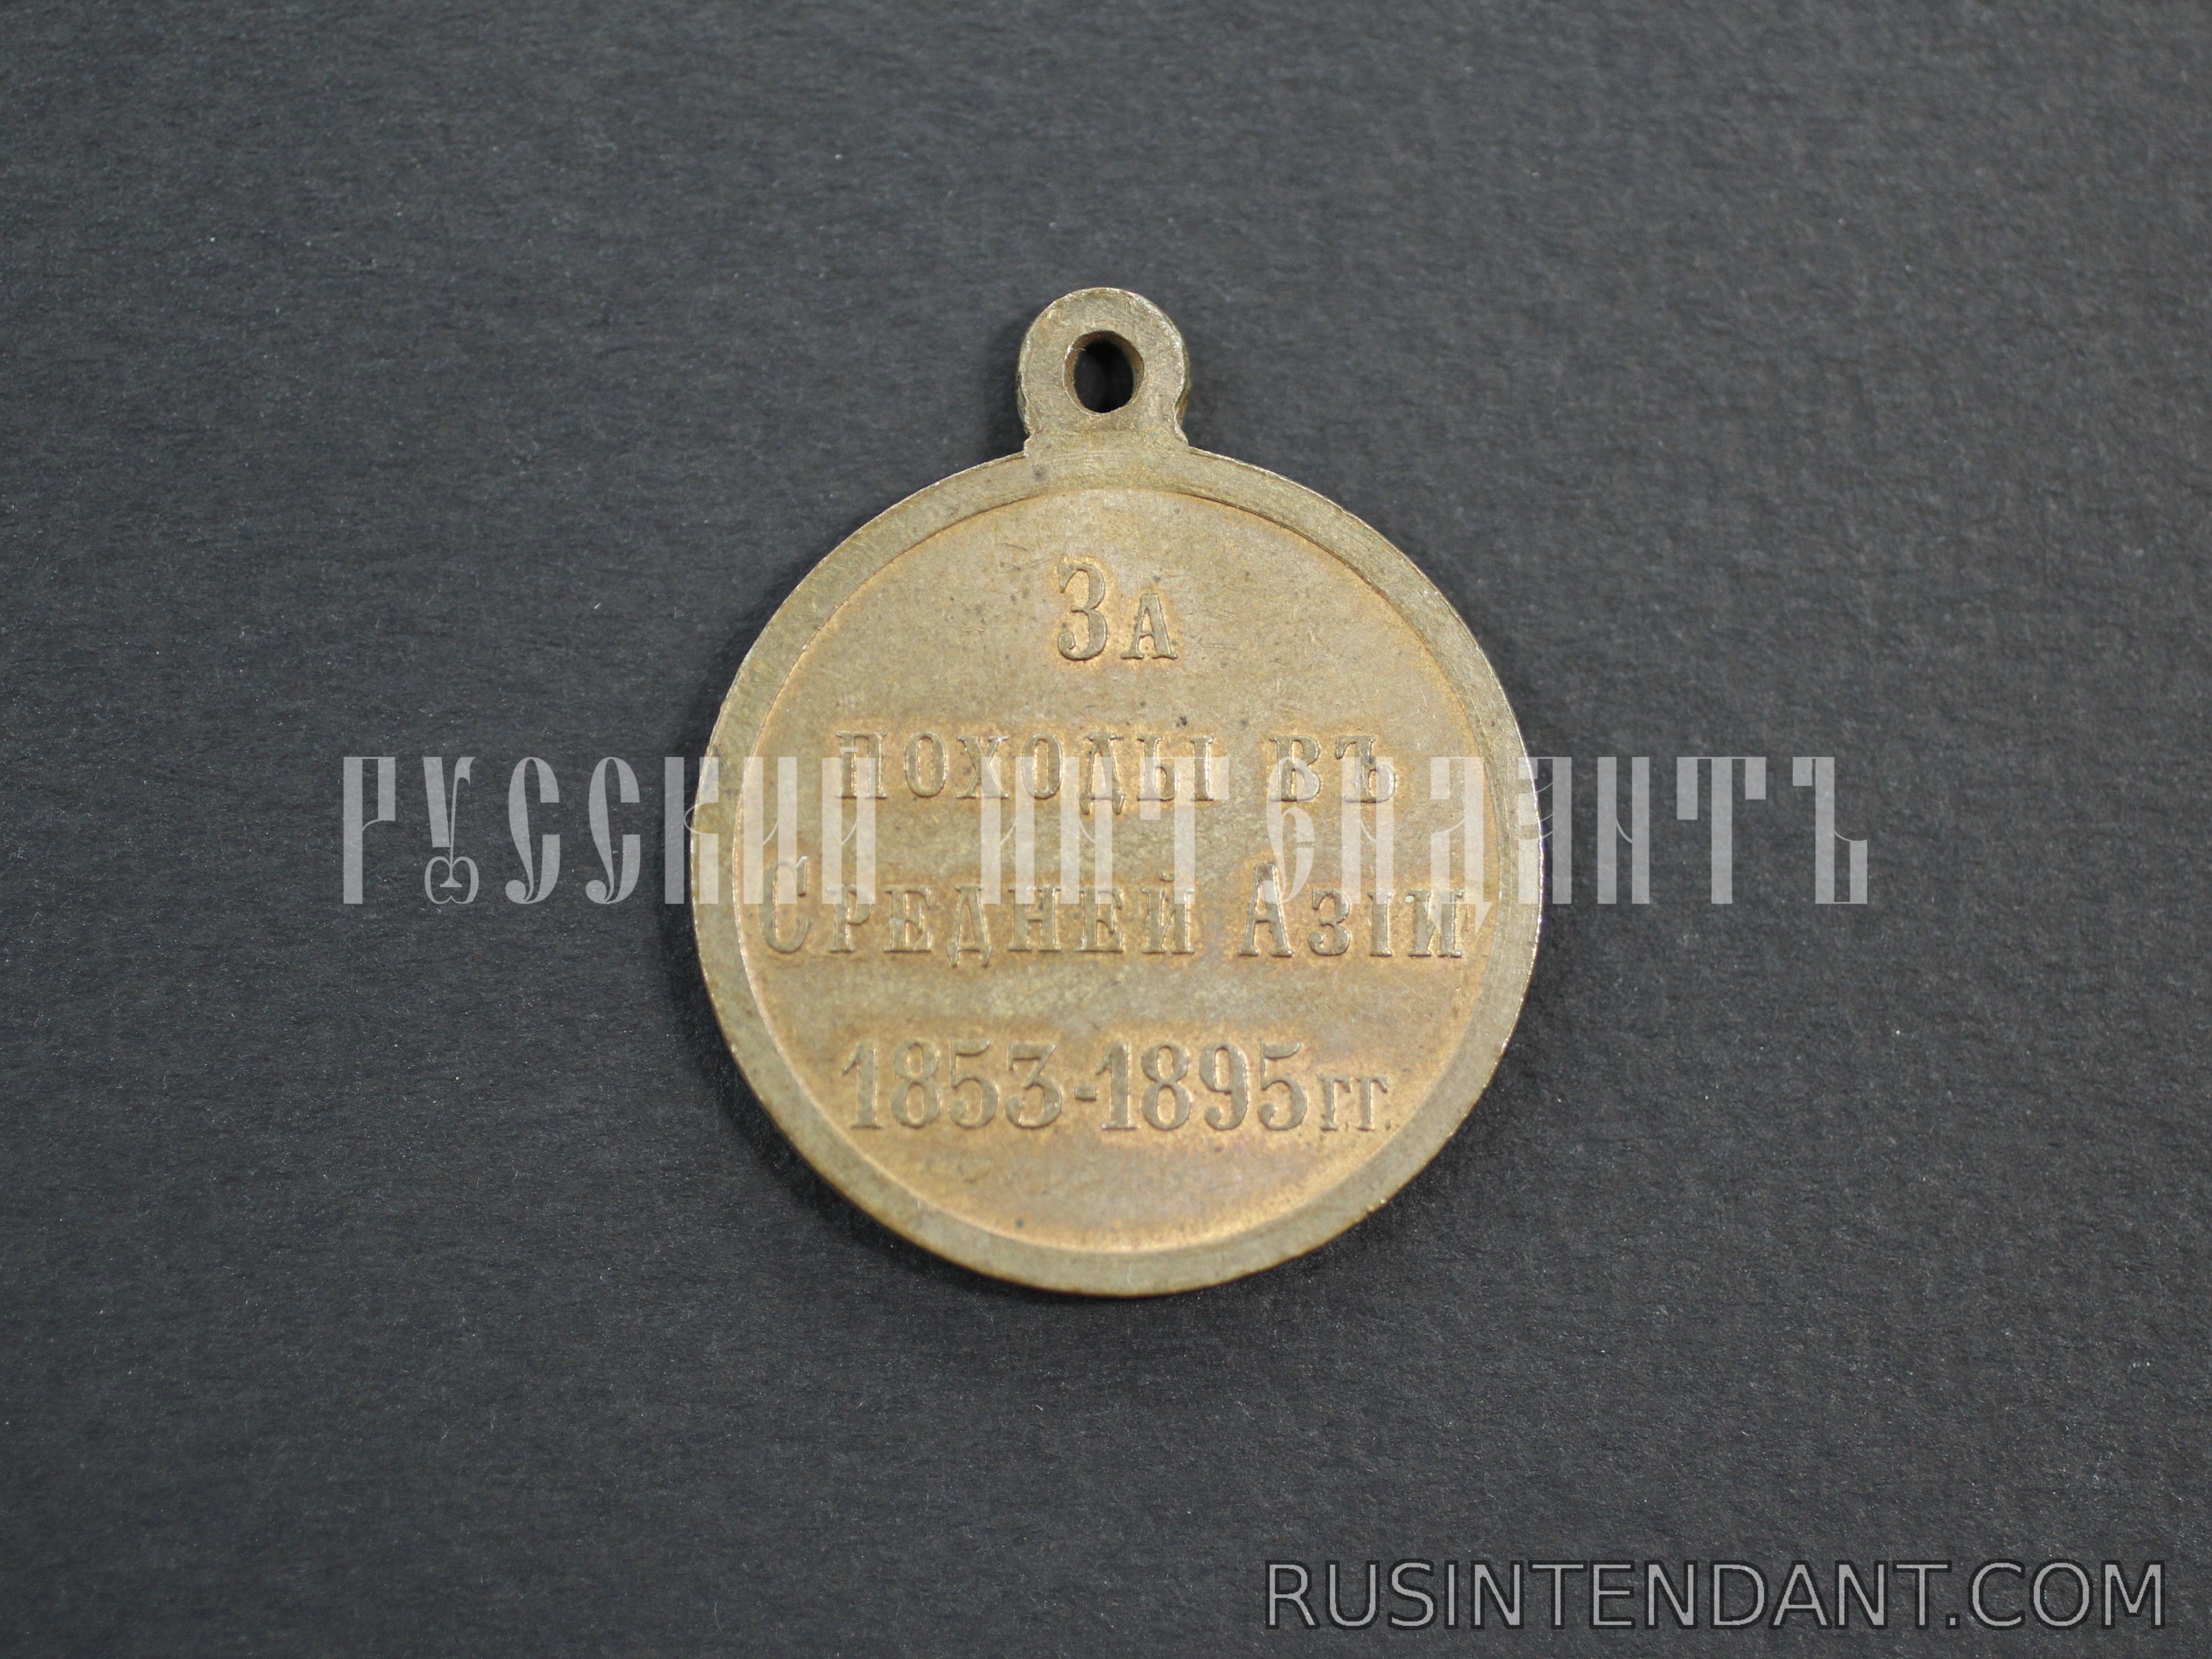 Фото 2: Медаль "За походы в Средней Азии 1853-1895" 